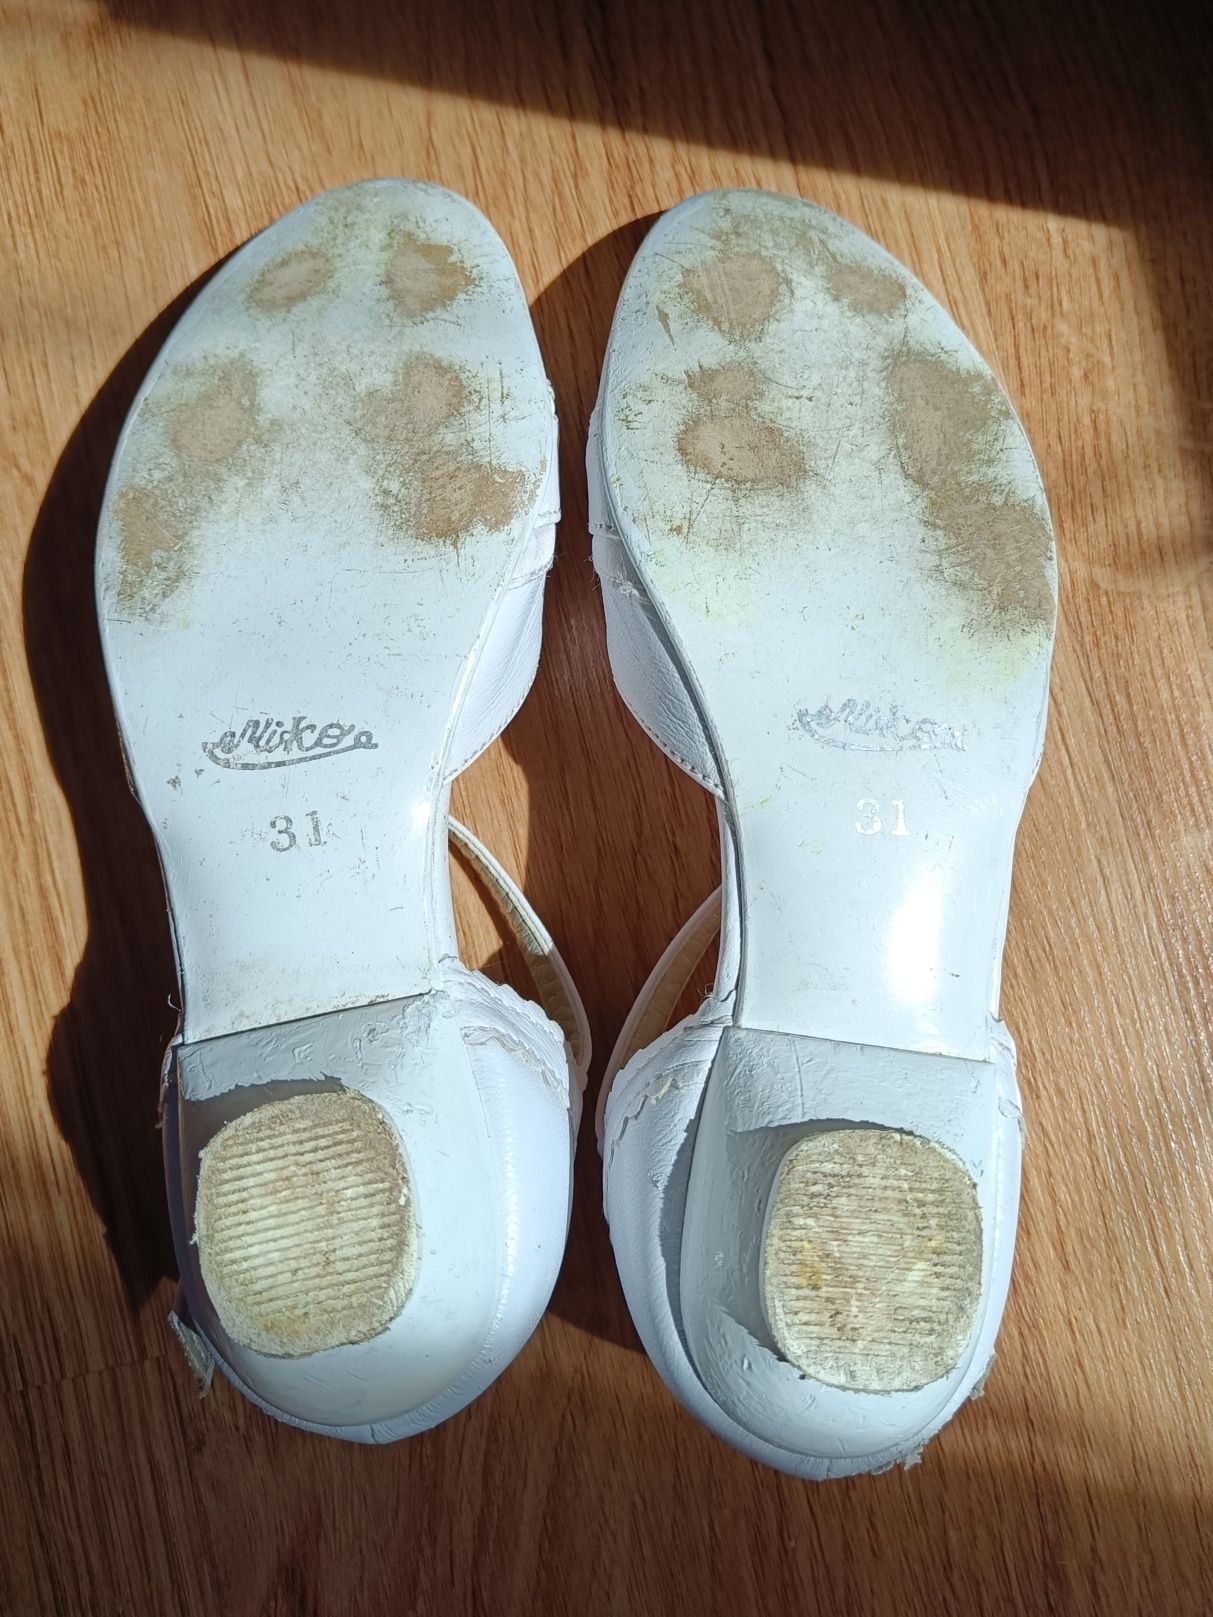 Białe buciki pantofelki komunijne dla dziewczynek rozmiar 31